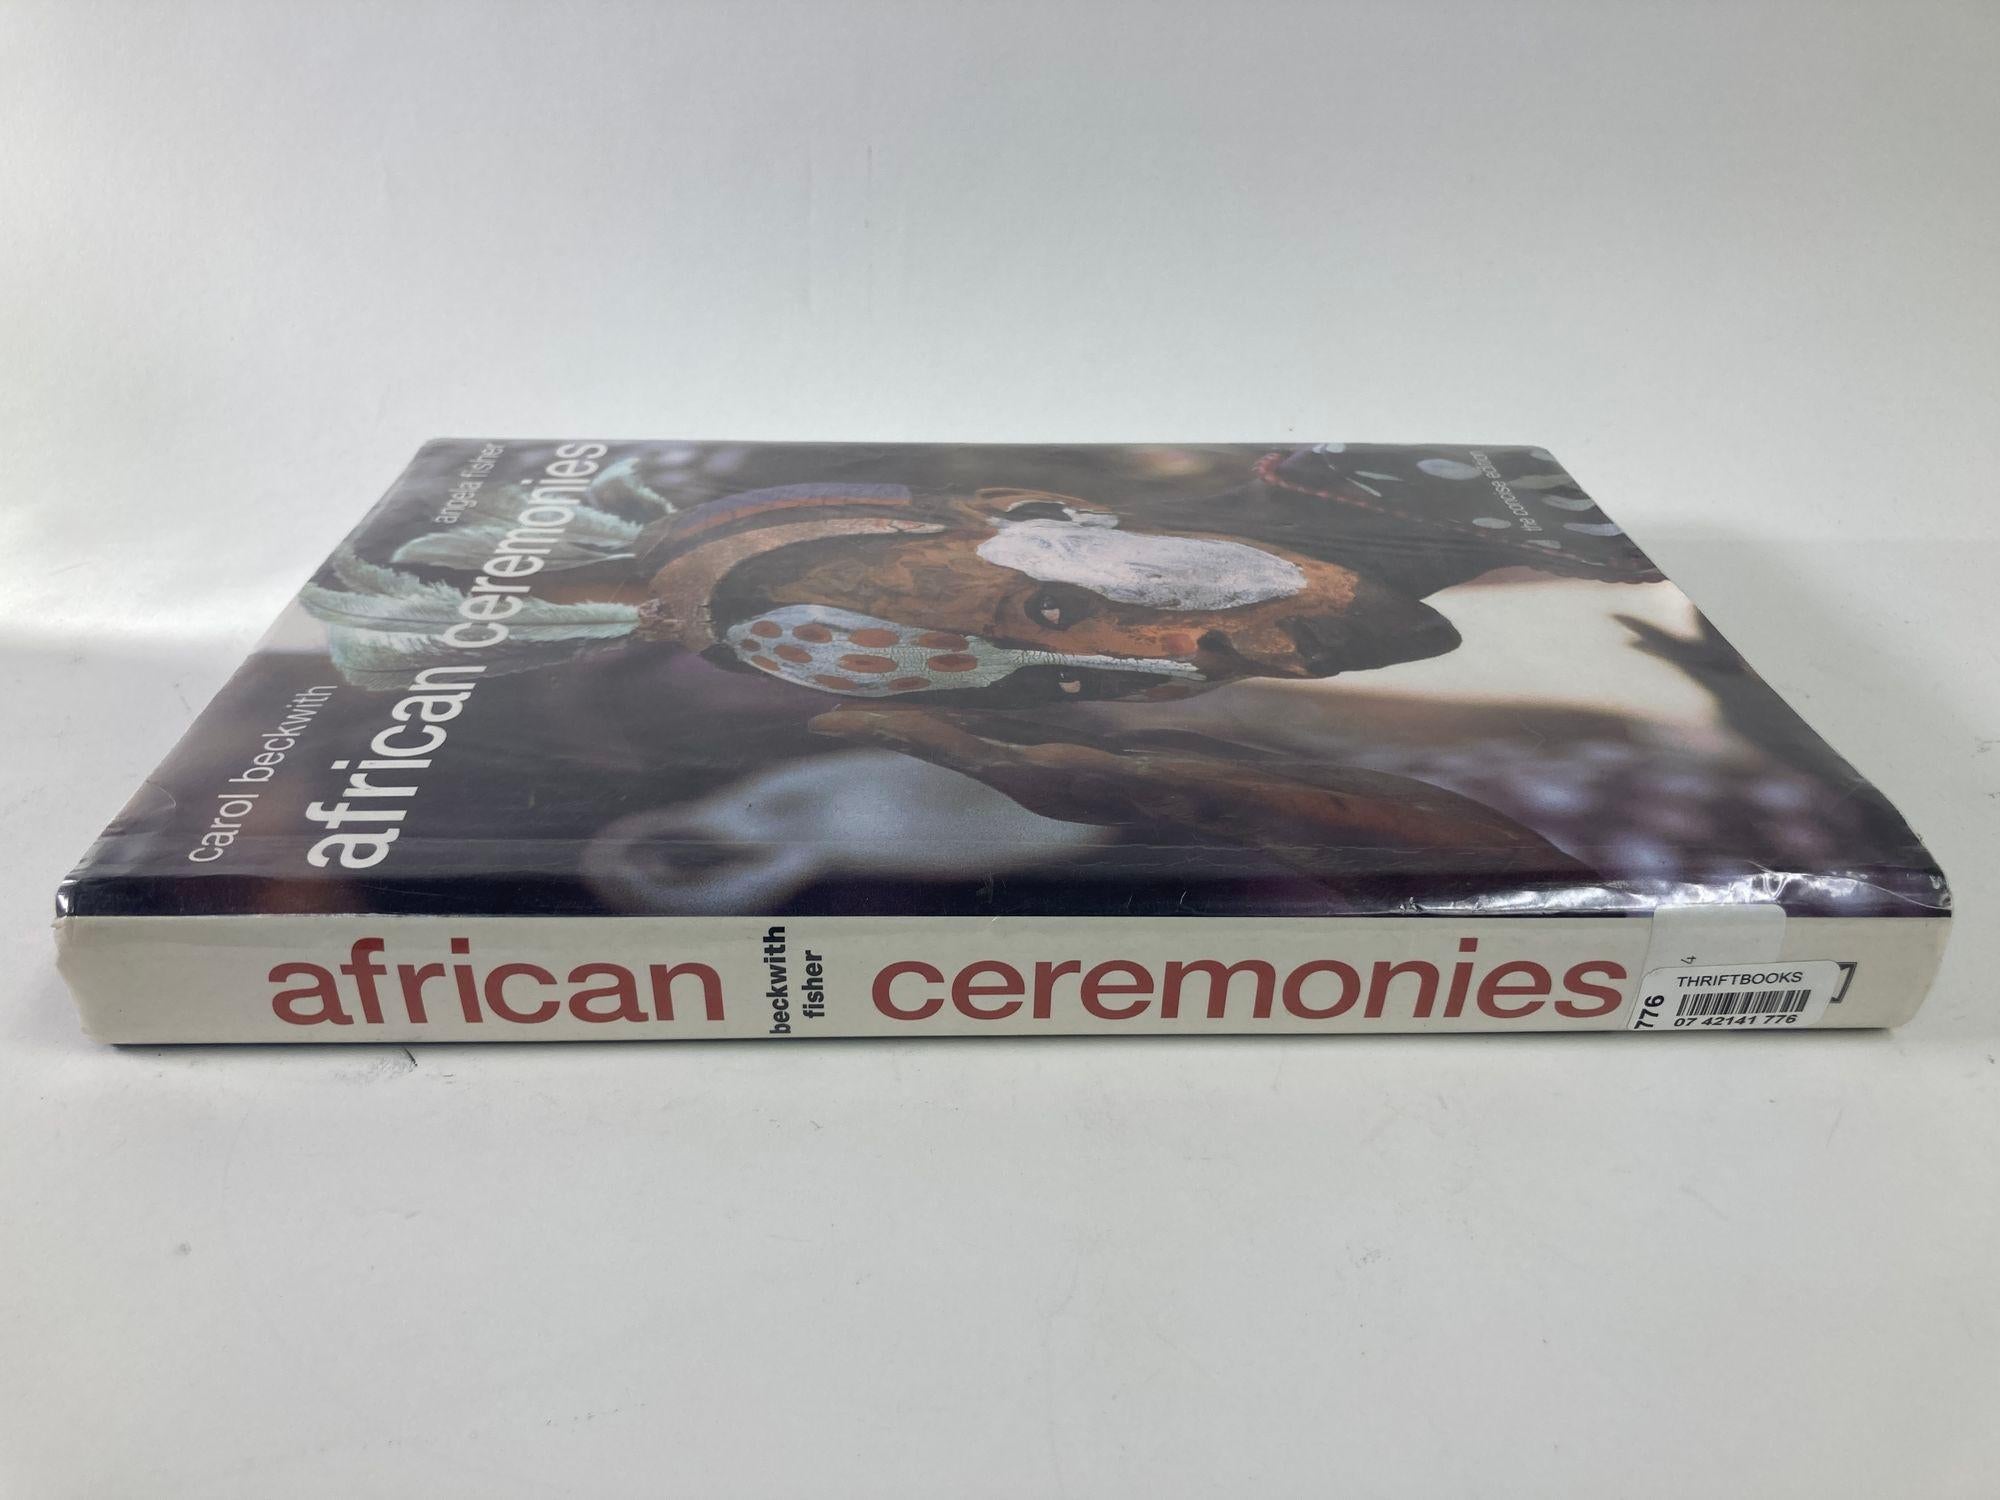 African Ceremonies (Cérémonies africaines) par Carol Beckwith et Angela Fisher, un gros livre de salon avec de superbes images.
Ce livre est extraordinaire parce que les auteurs se sont attachés à préserver les traditions. Certaines d'entre elles